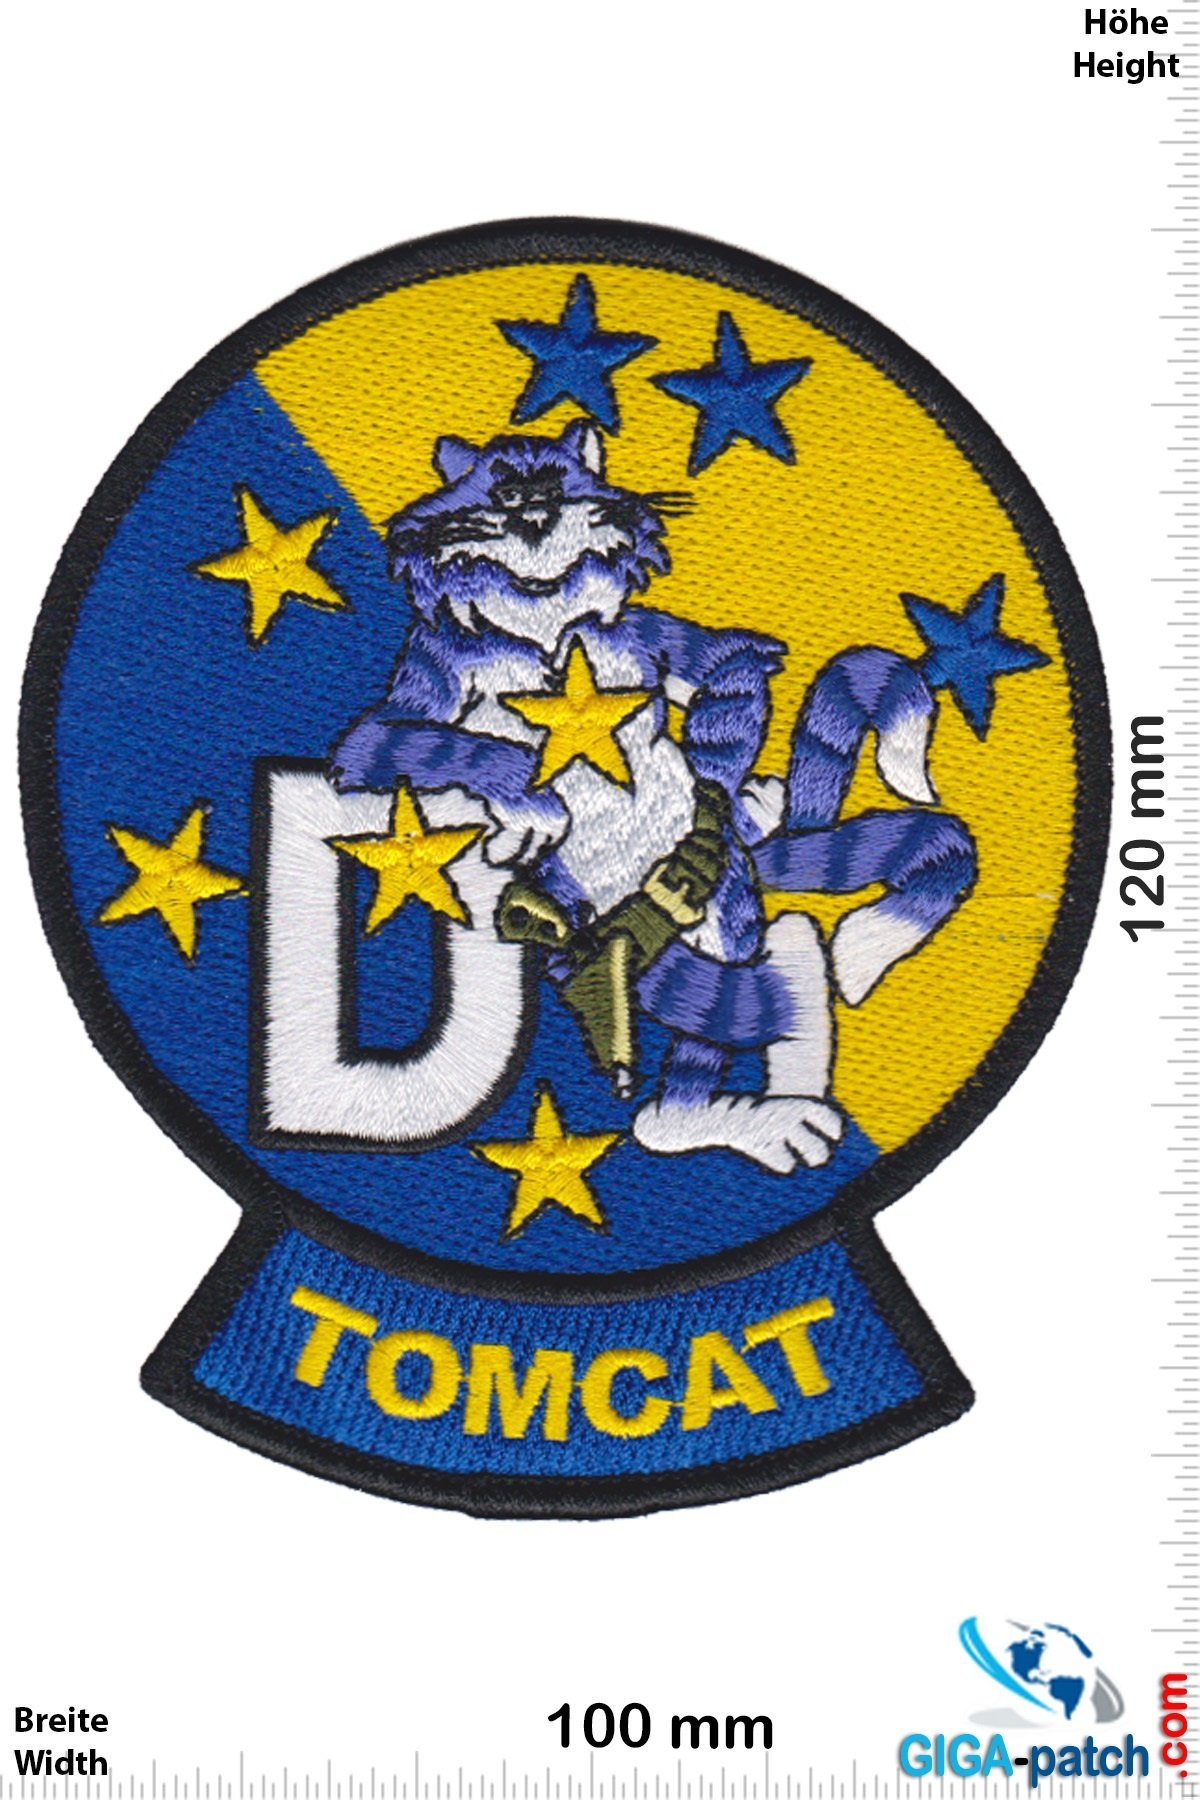 U.S. Navy Vf-213 Black Lions F14D Tomcat - HQ